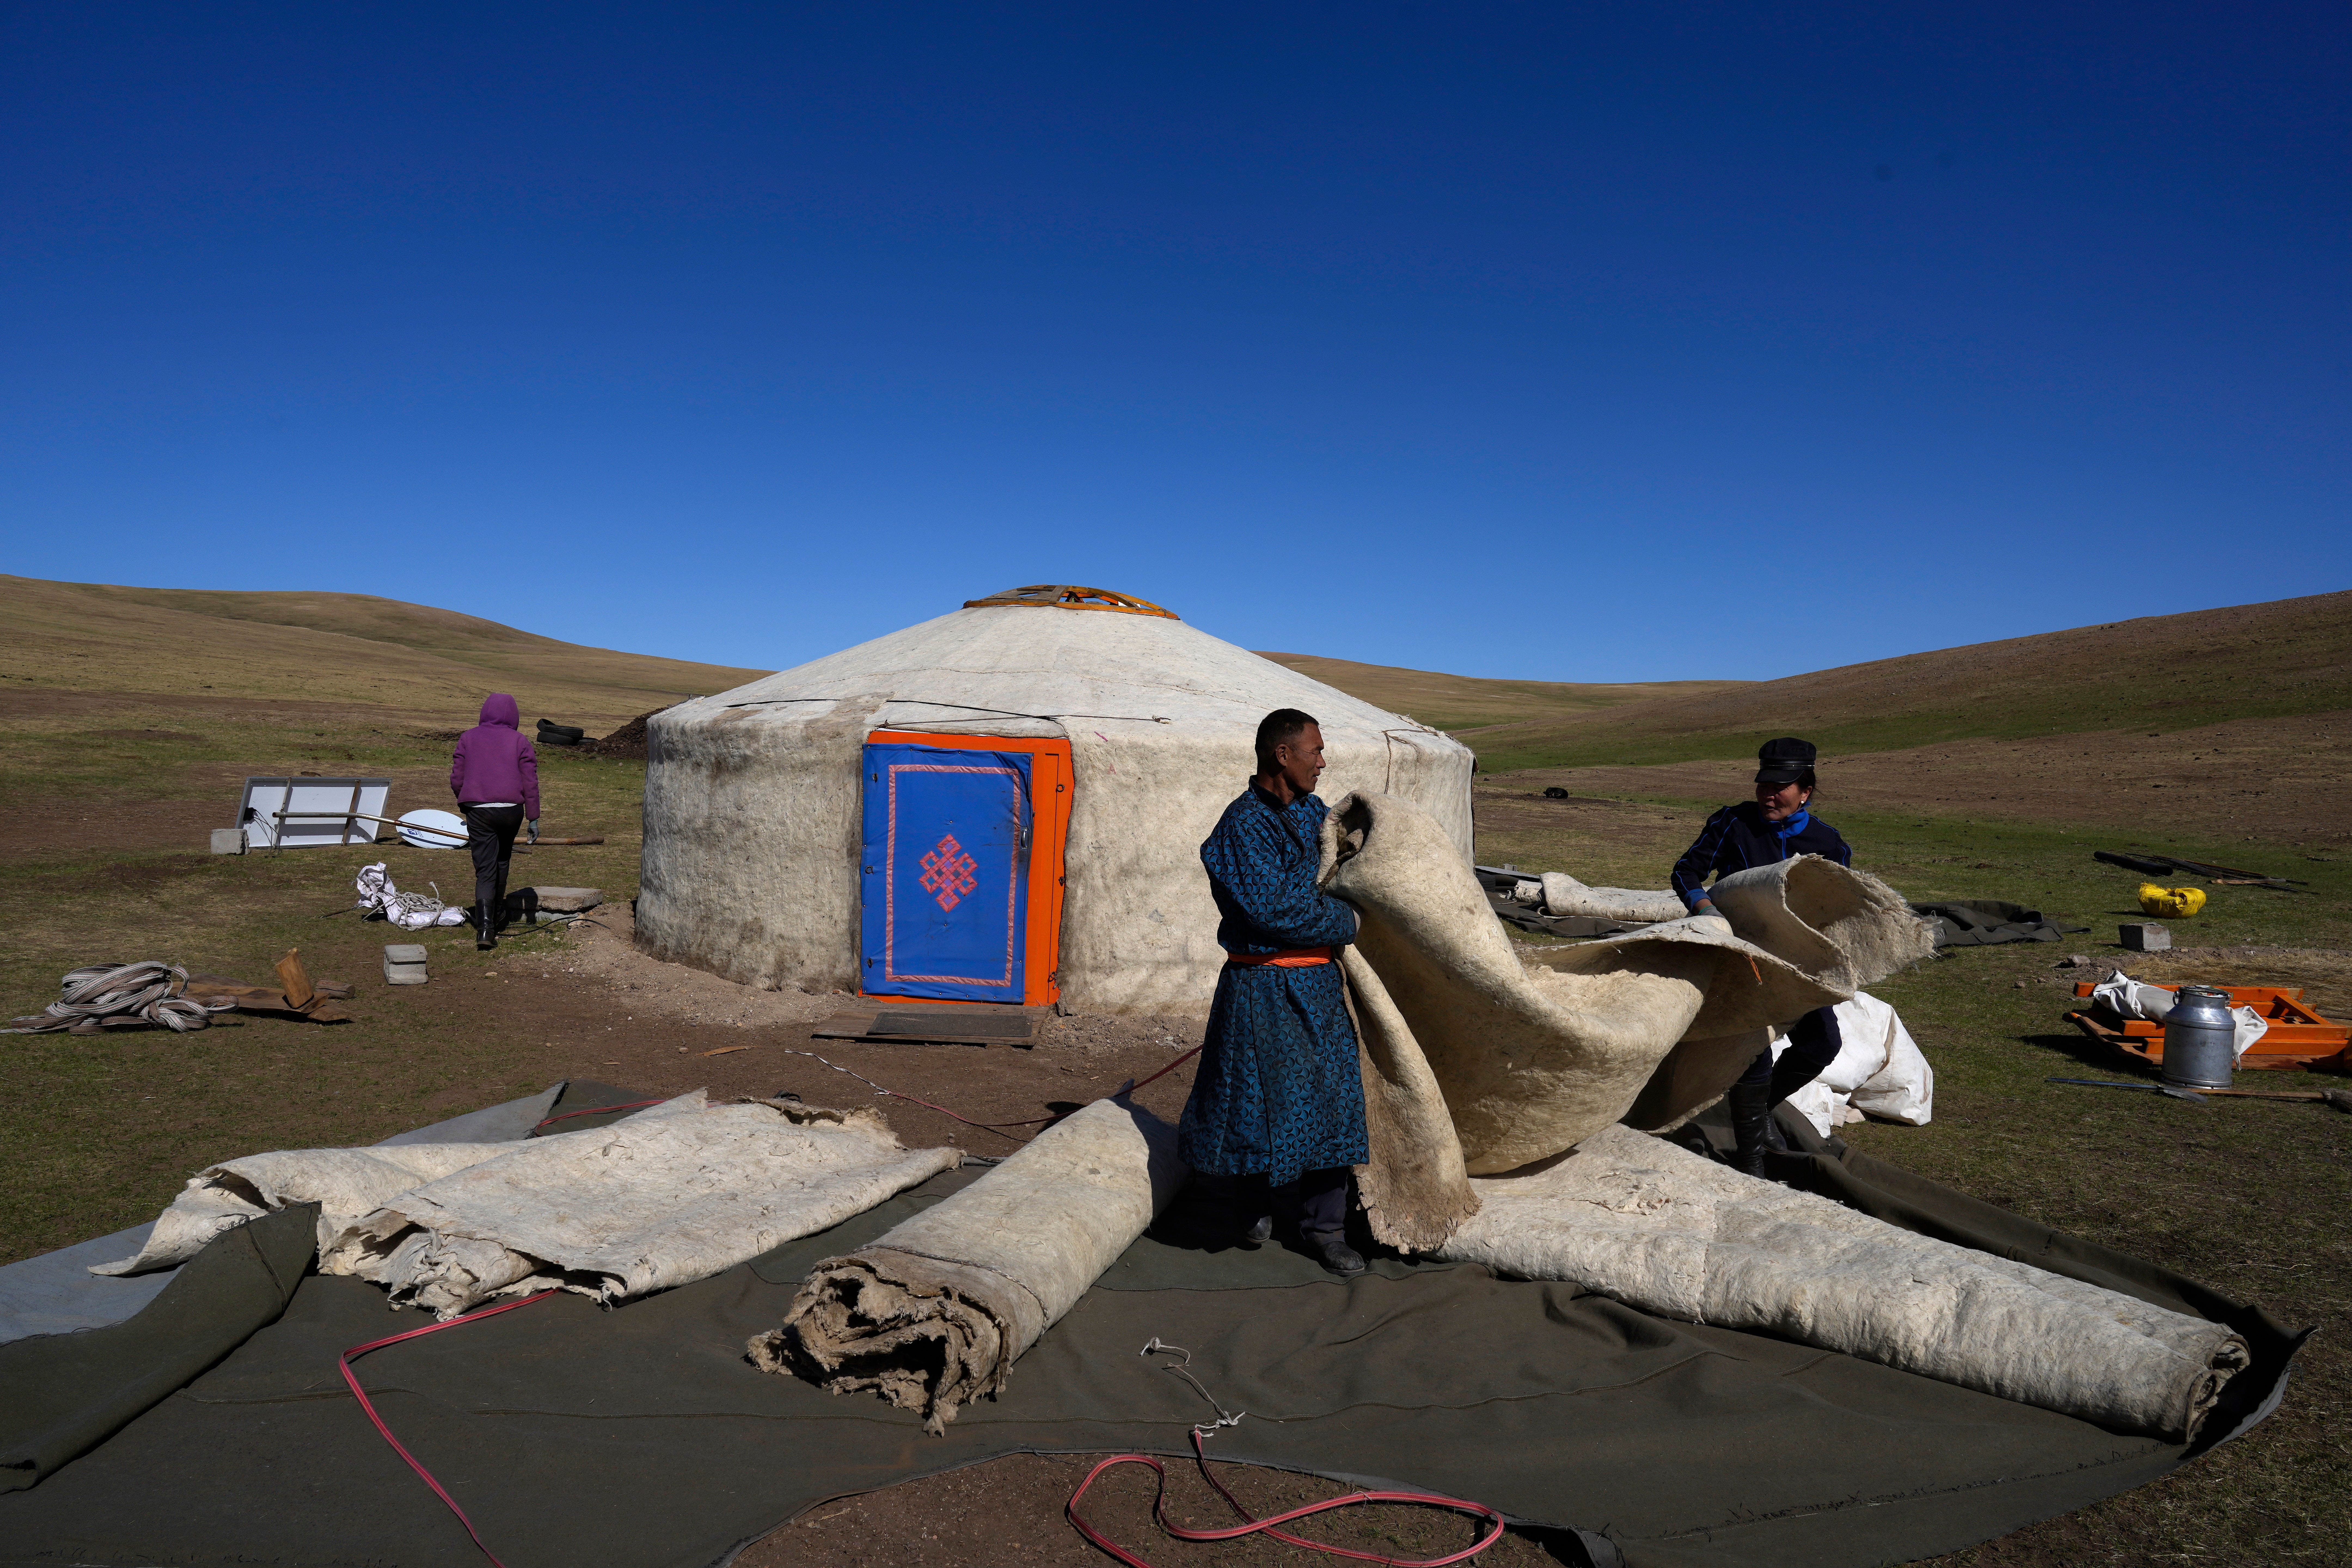 激しさを増す夏の干ばつと冬の嵐… 気候危機に直面する、モンゴル遊牧民の暮らし